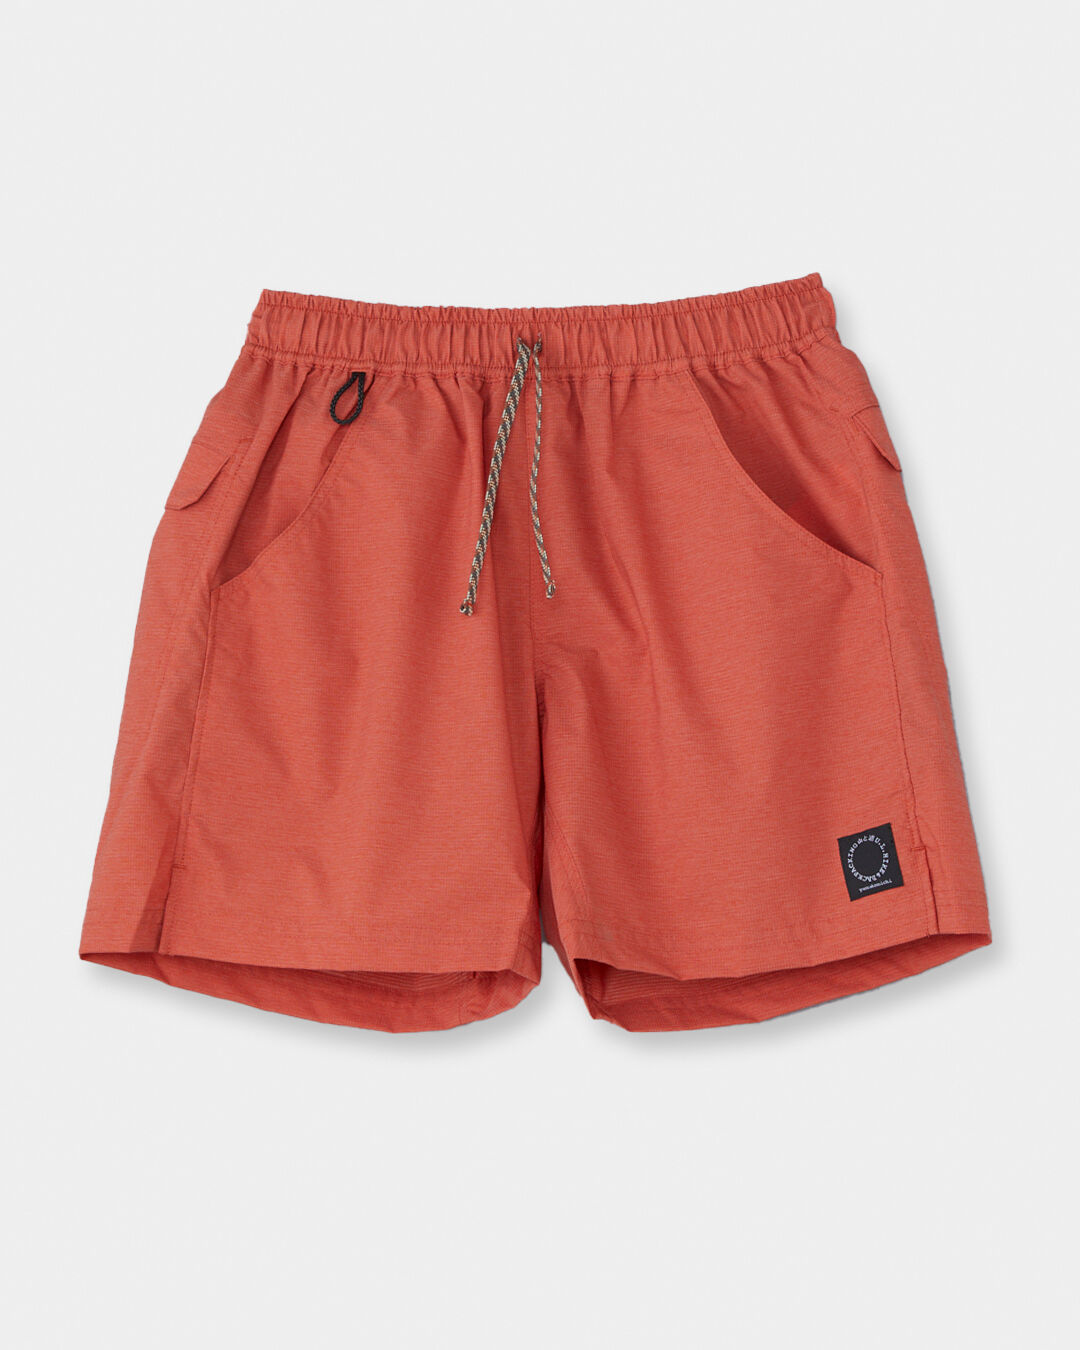 山と道 5-pocket shorts bordeaux サイズM - アウトドア